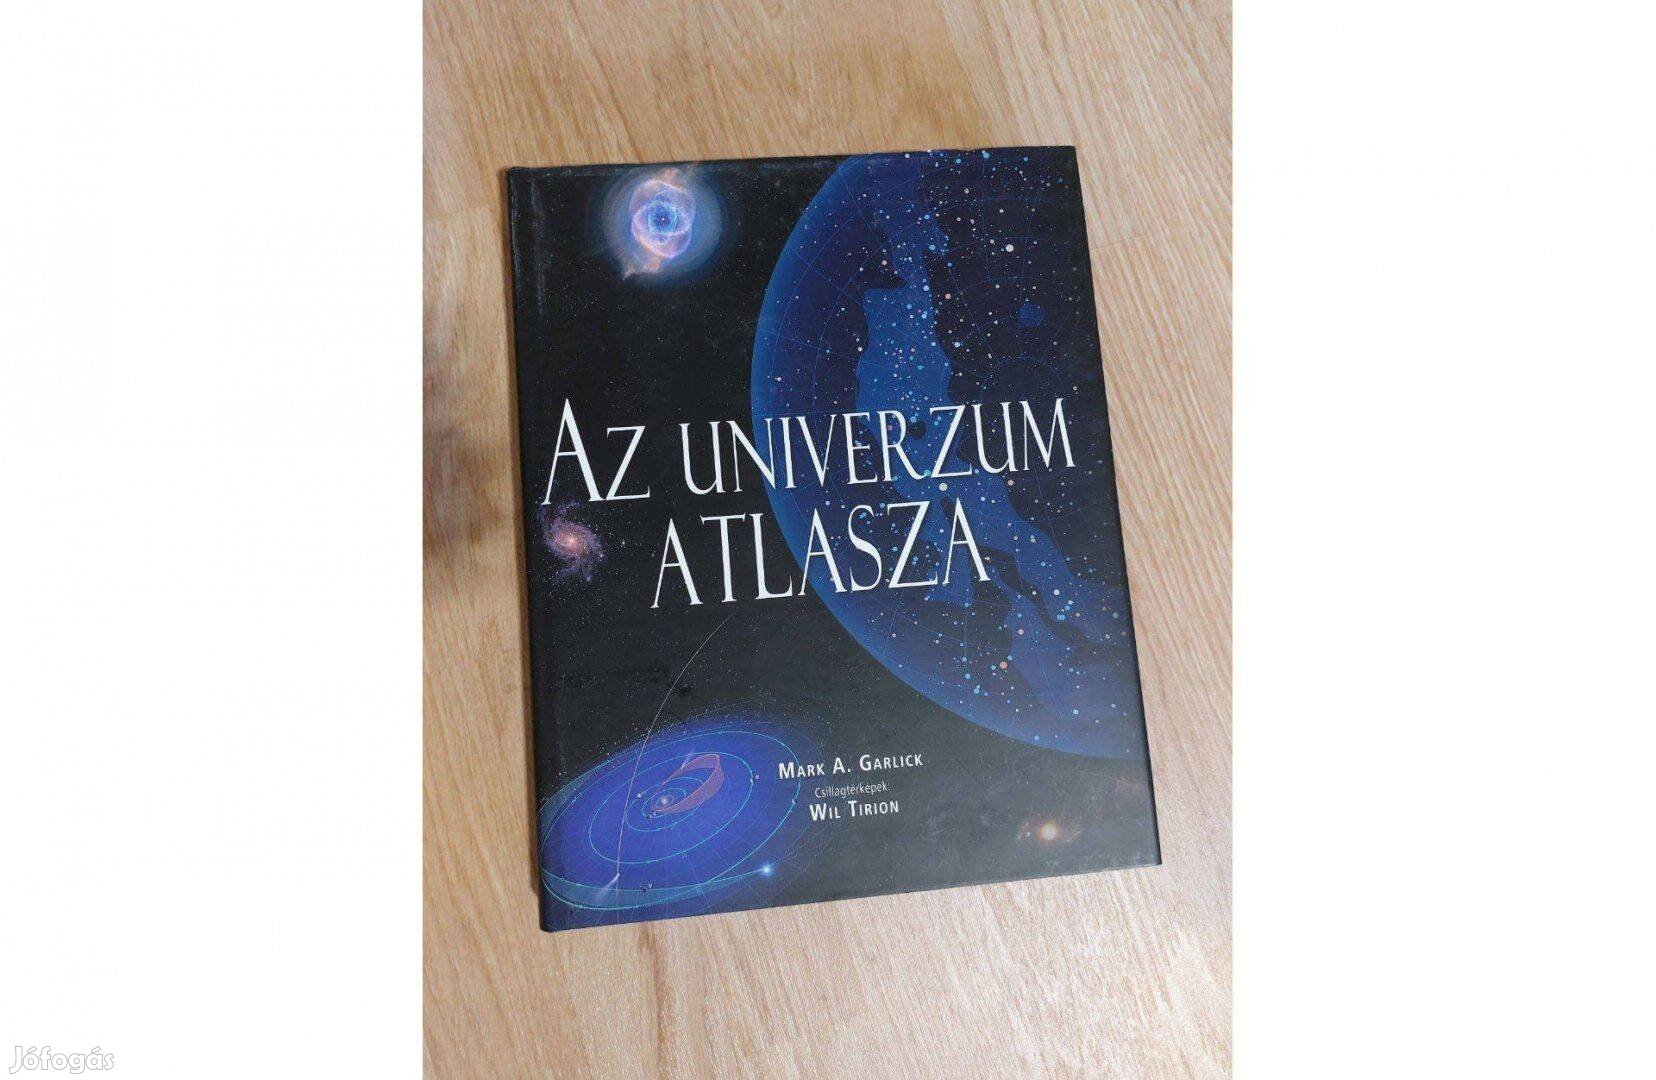 Az Univerzum Atlasza könyv (Mark A. Garlick, 2009) eladó, Új